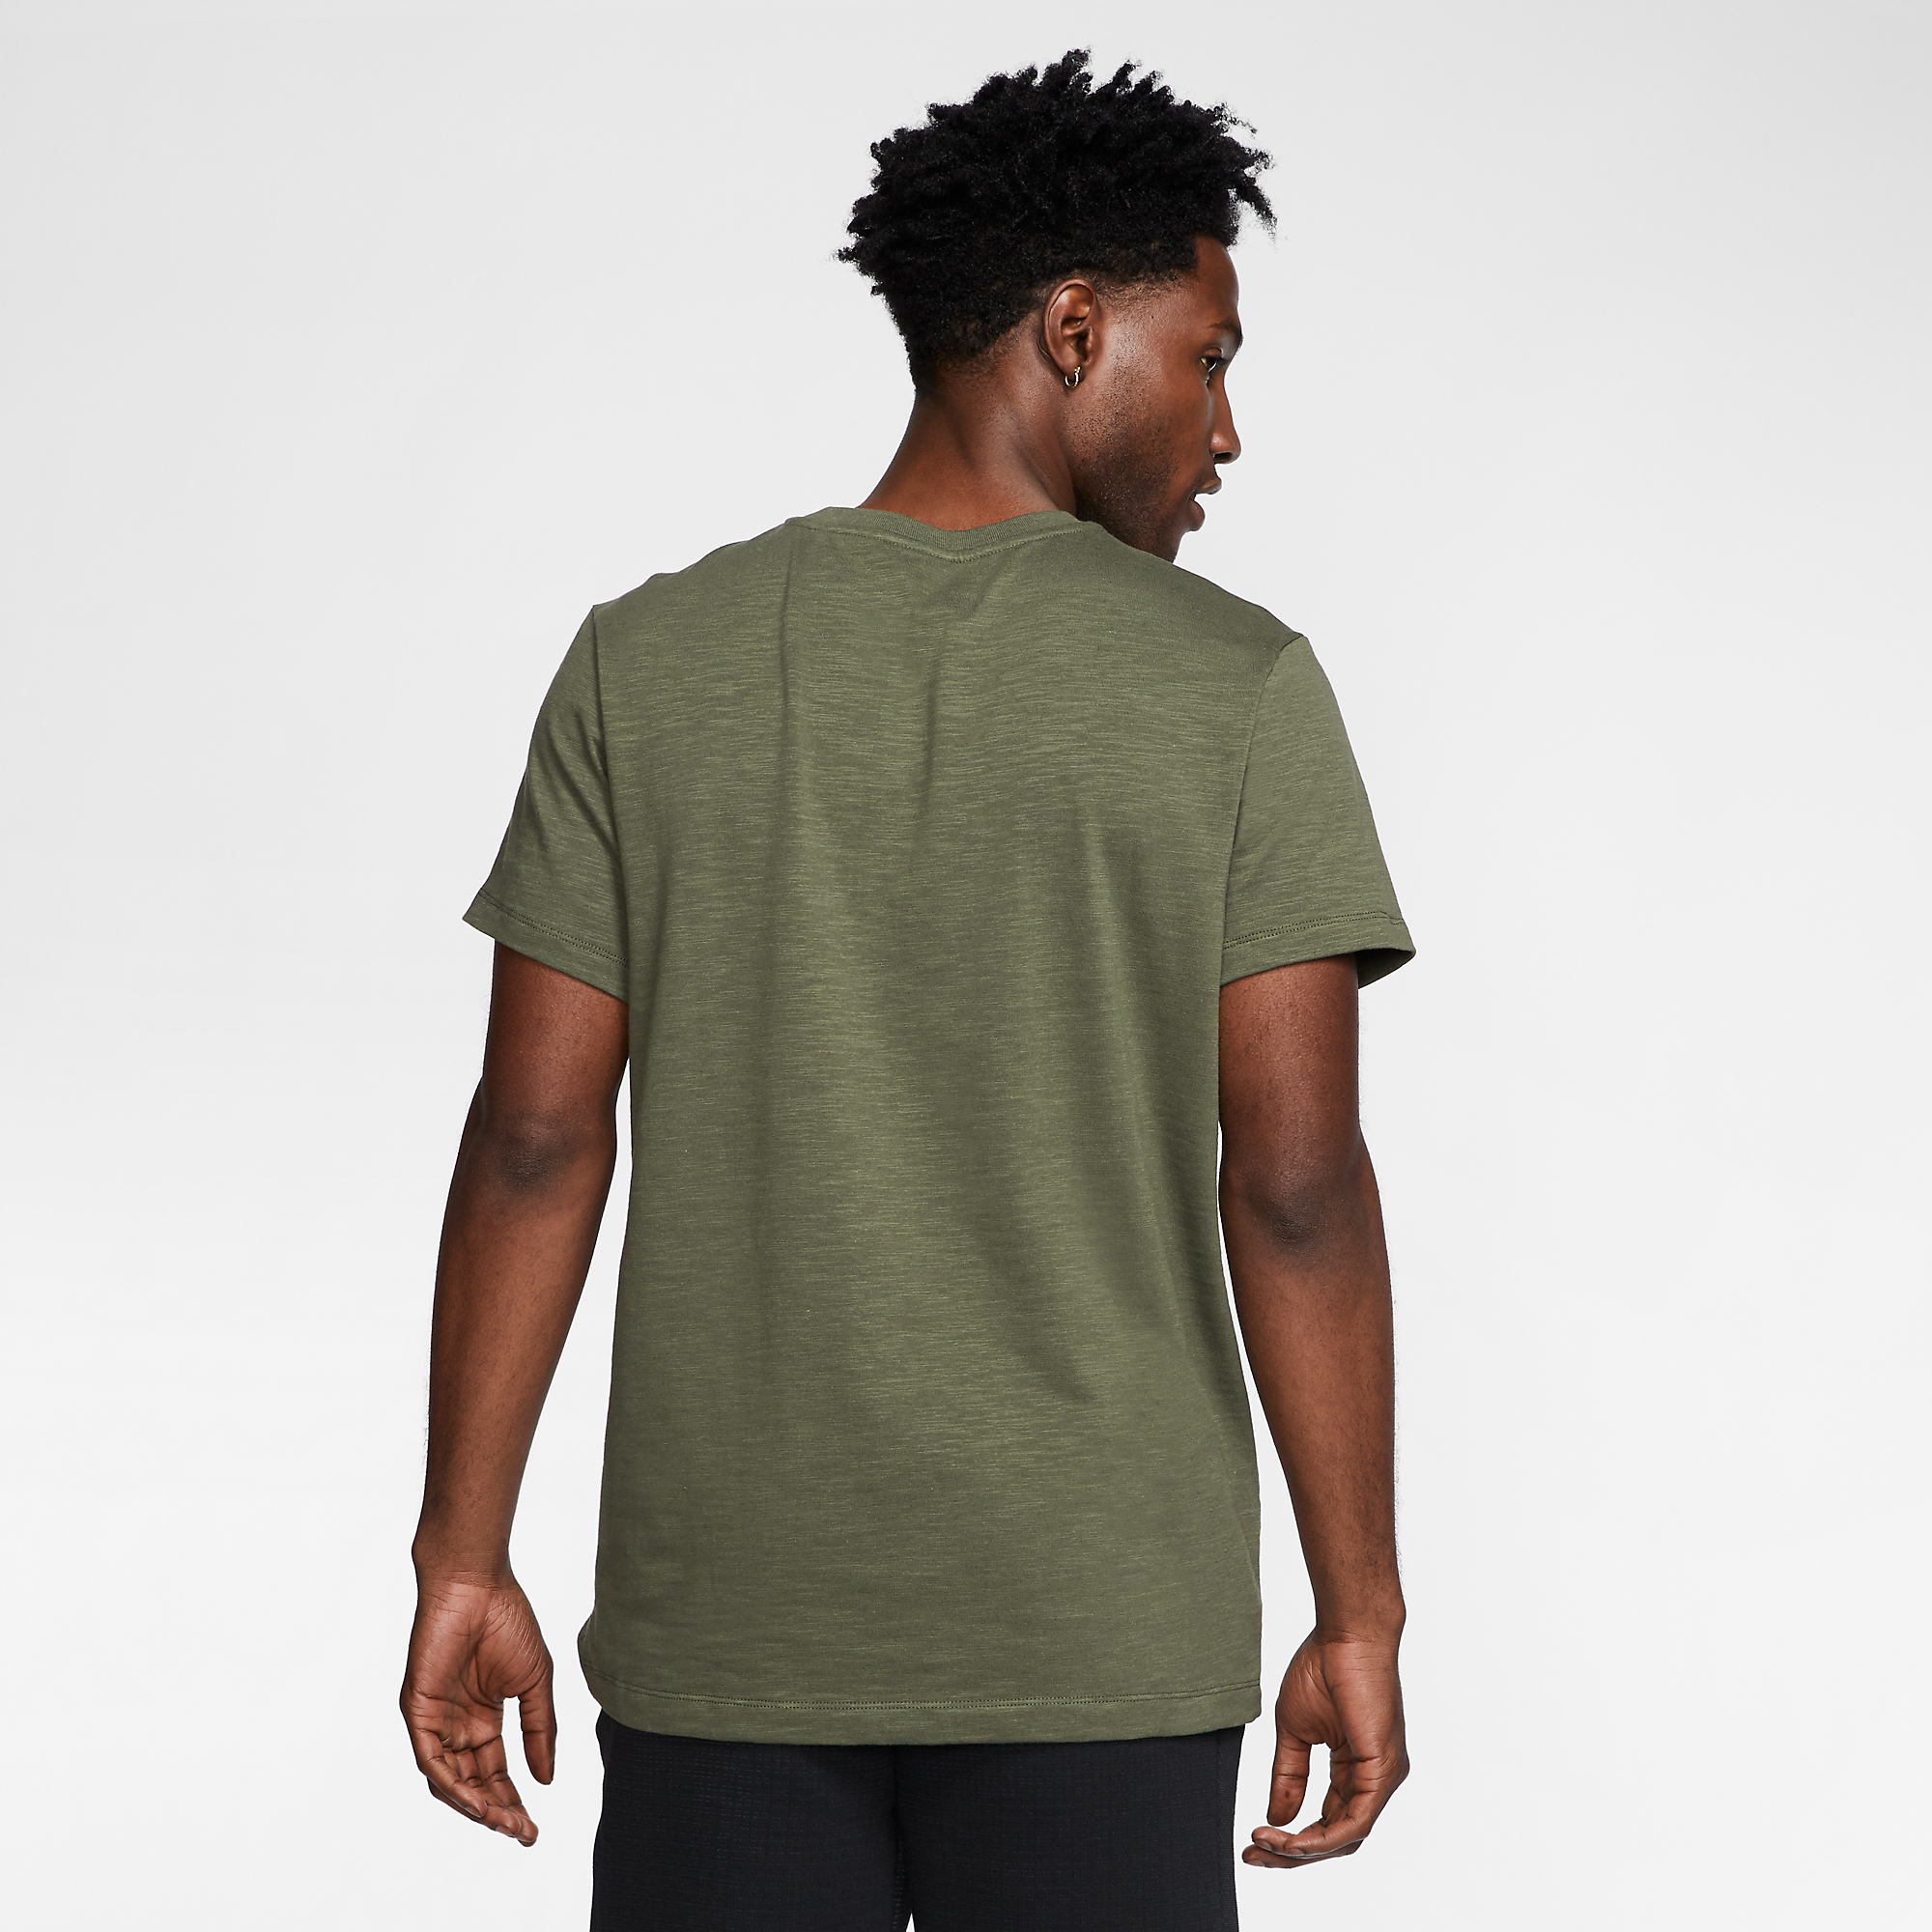  Nike Sportswear Short-Sleeve Top - Olive 